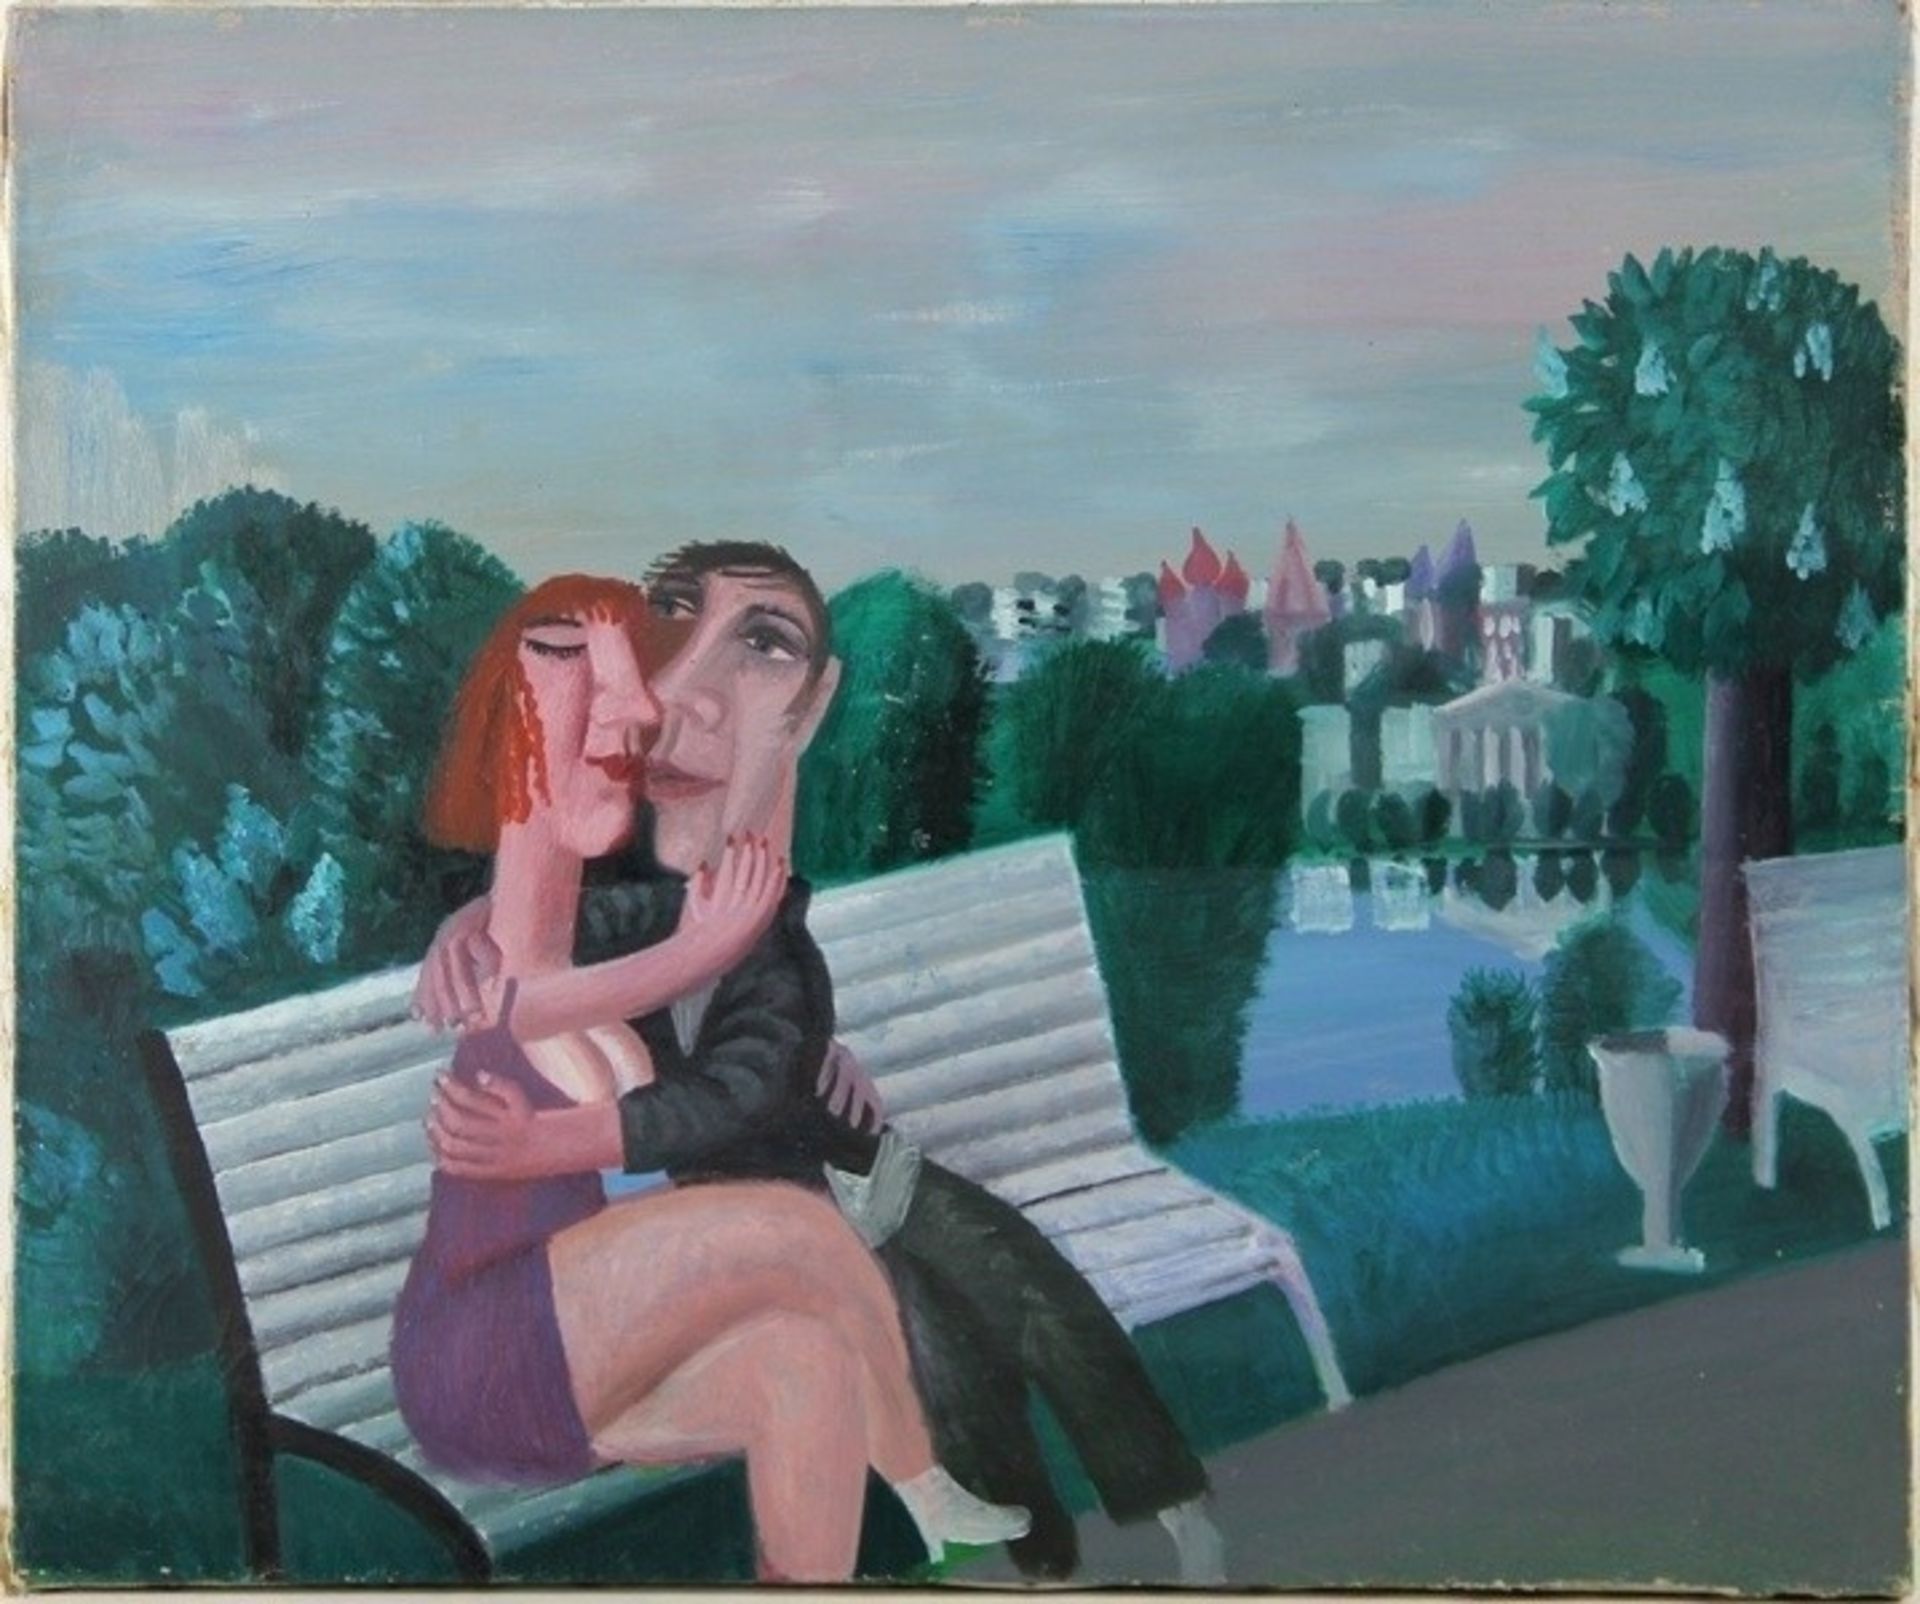 Goryainov, Anatoly1992, sich umarmendes Paar auf einer Bank im Park, rechts Blick auf eine St